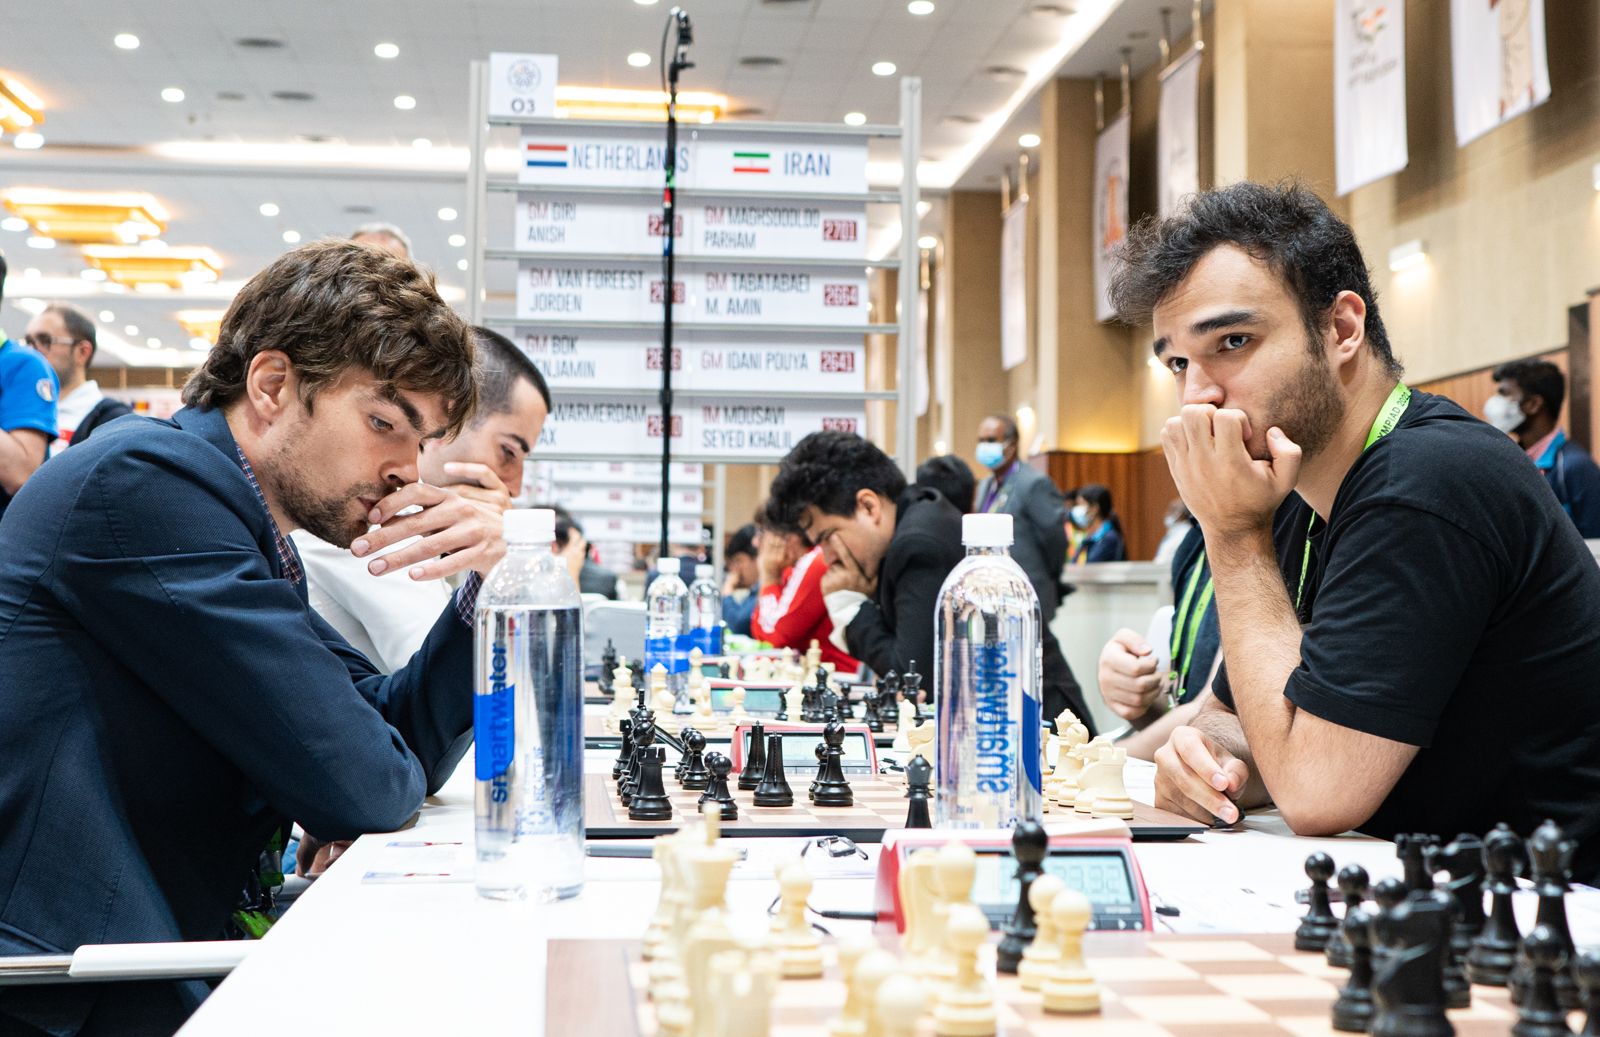 Aqui Acontece - 44ª Olimpíada de Xadrez FIDE